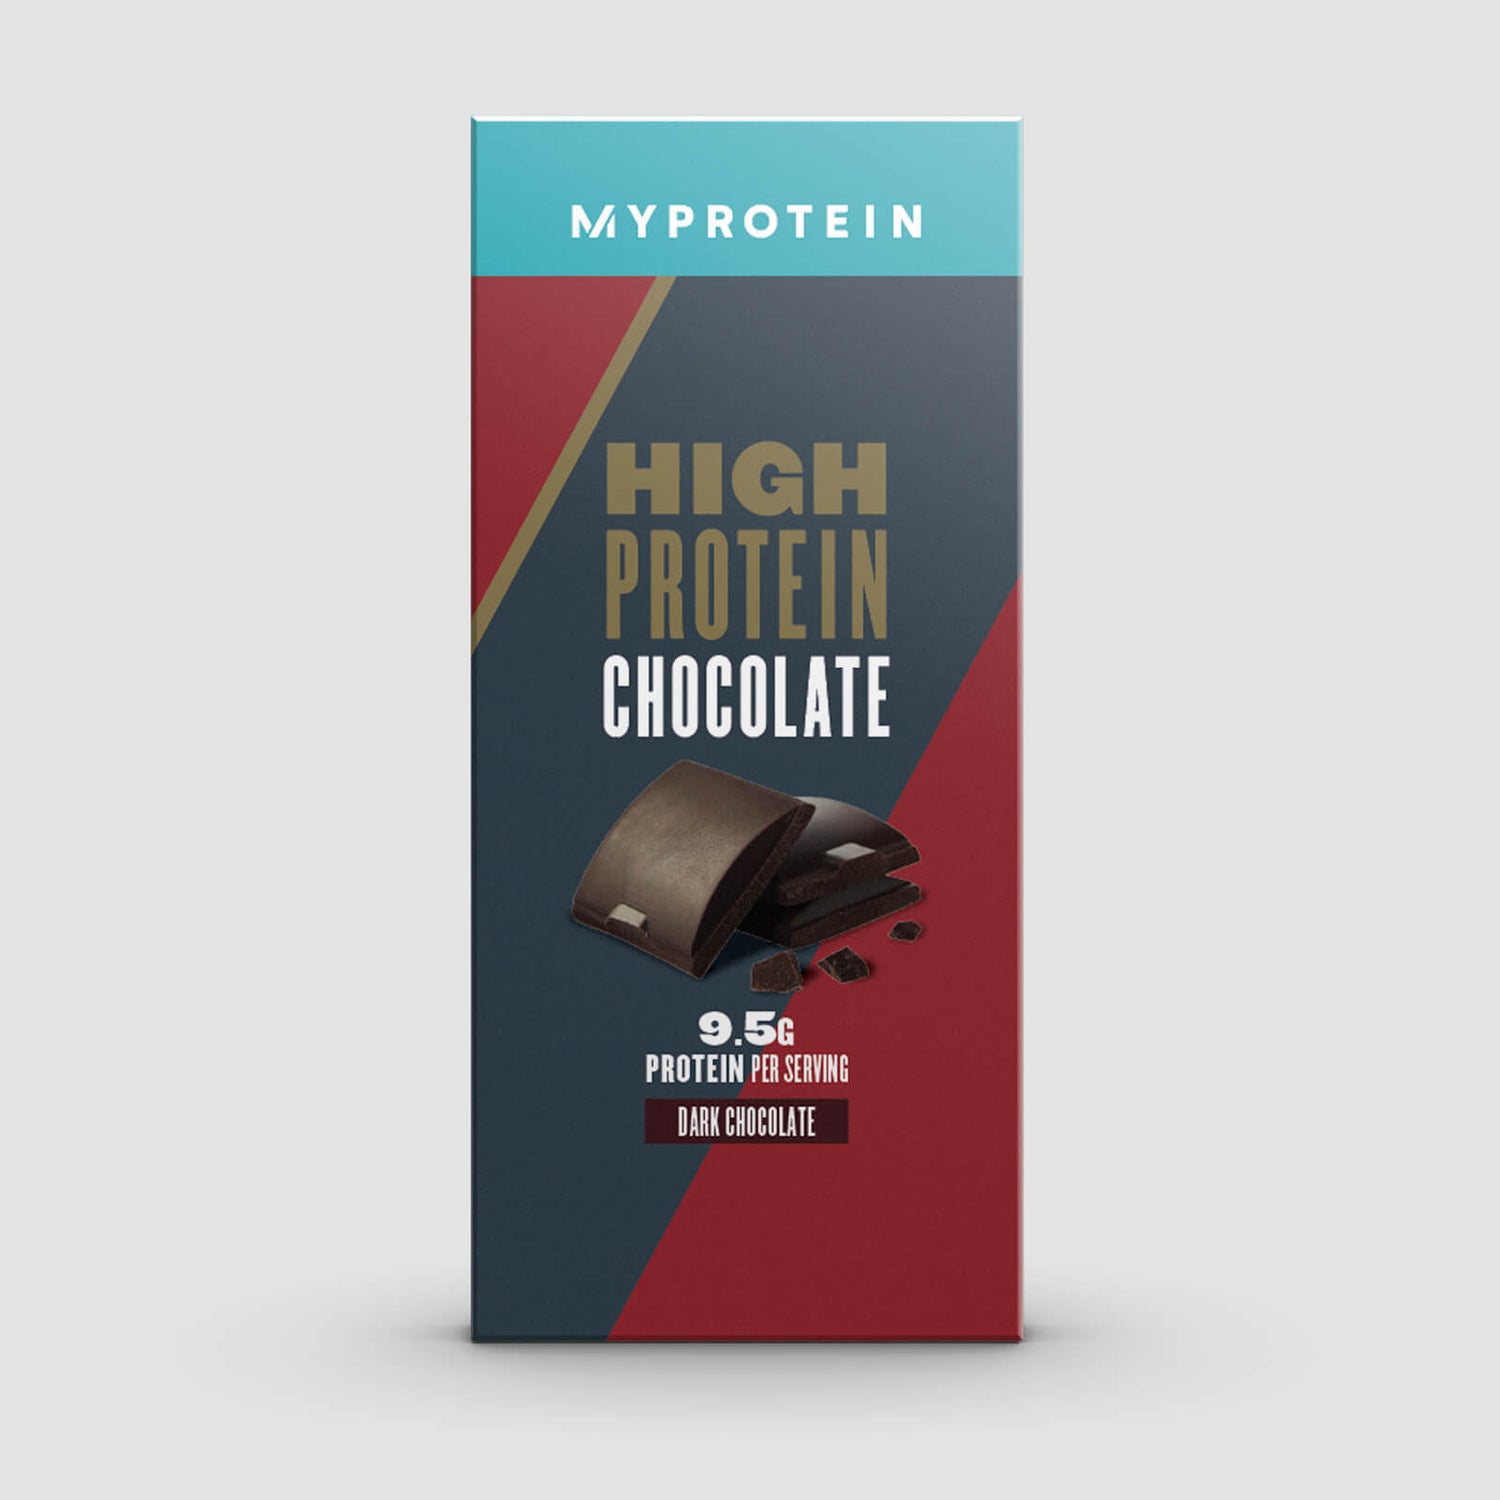 高蛋白营养巧克力 - 黑巧克力口味